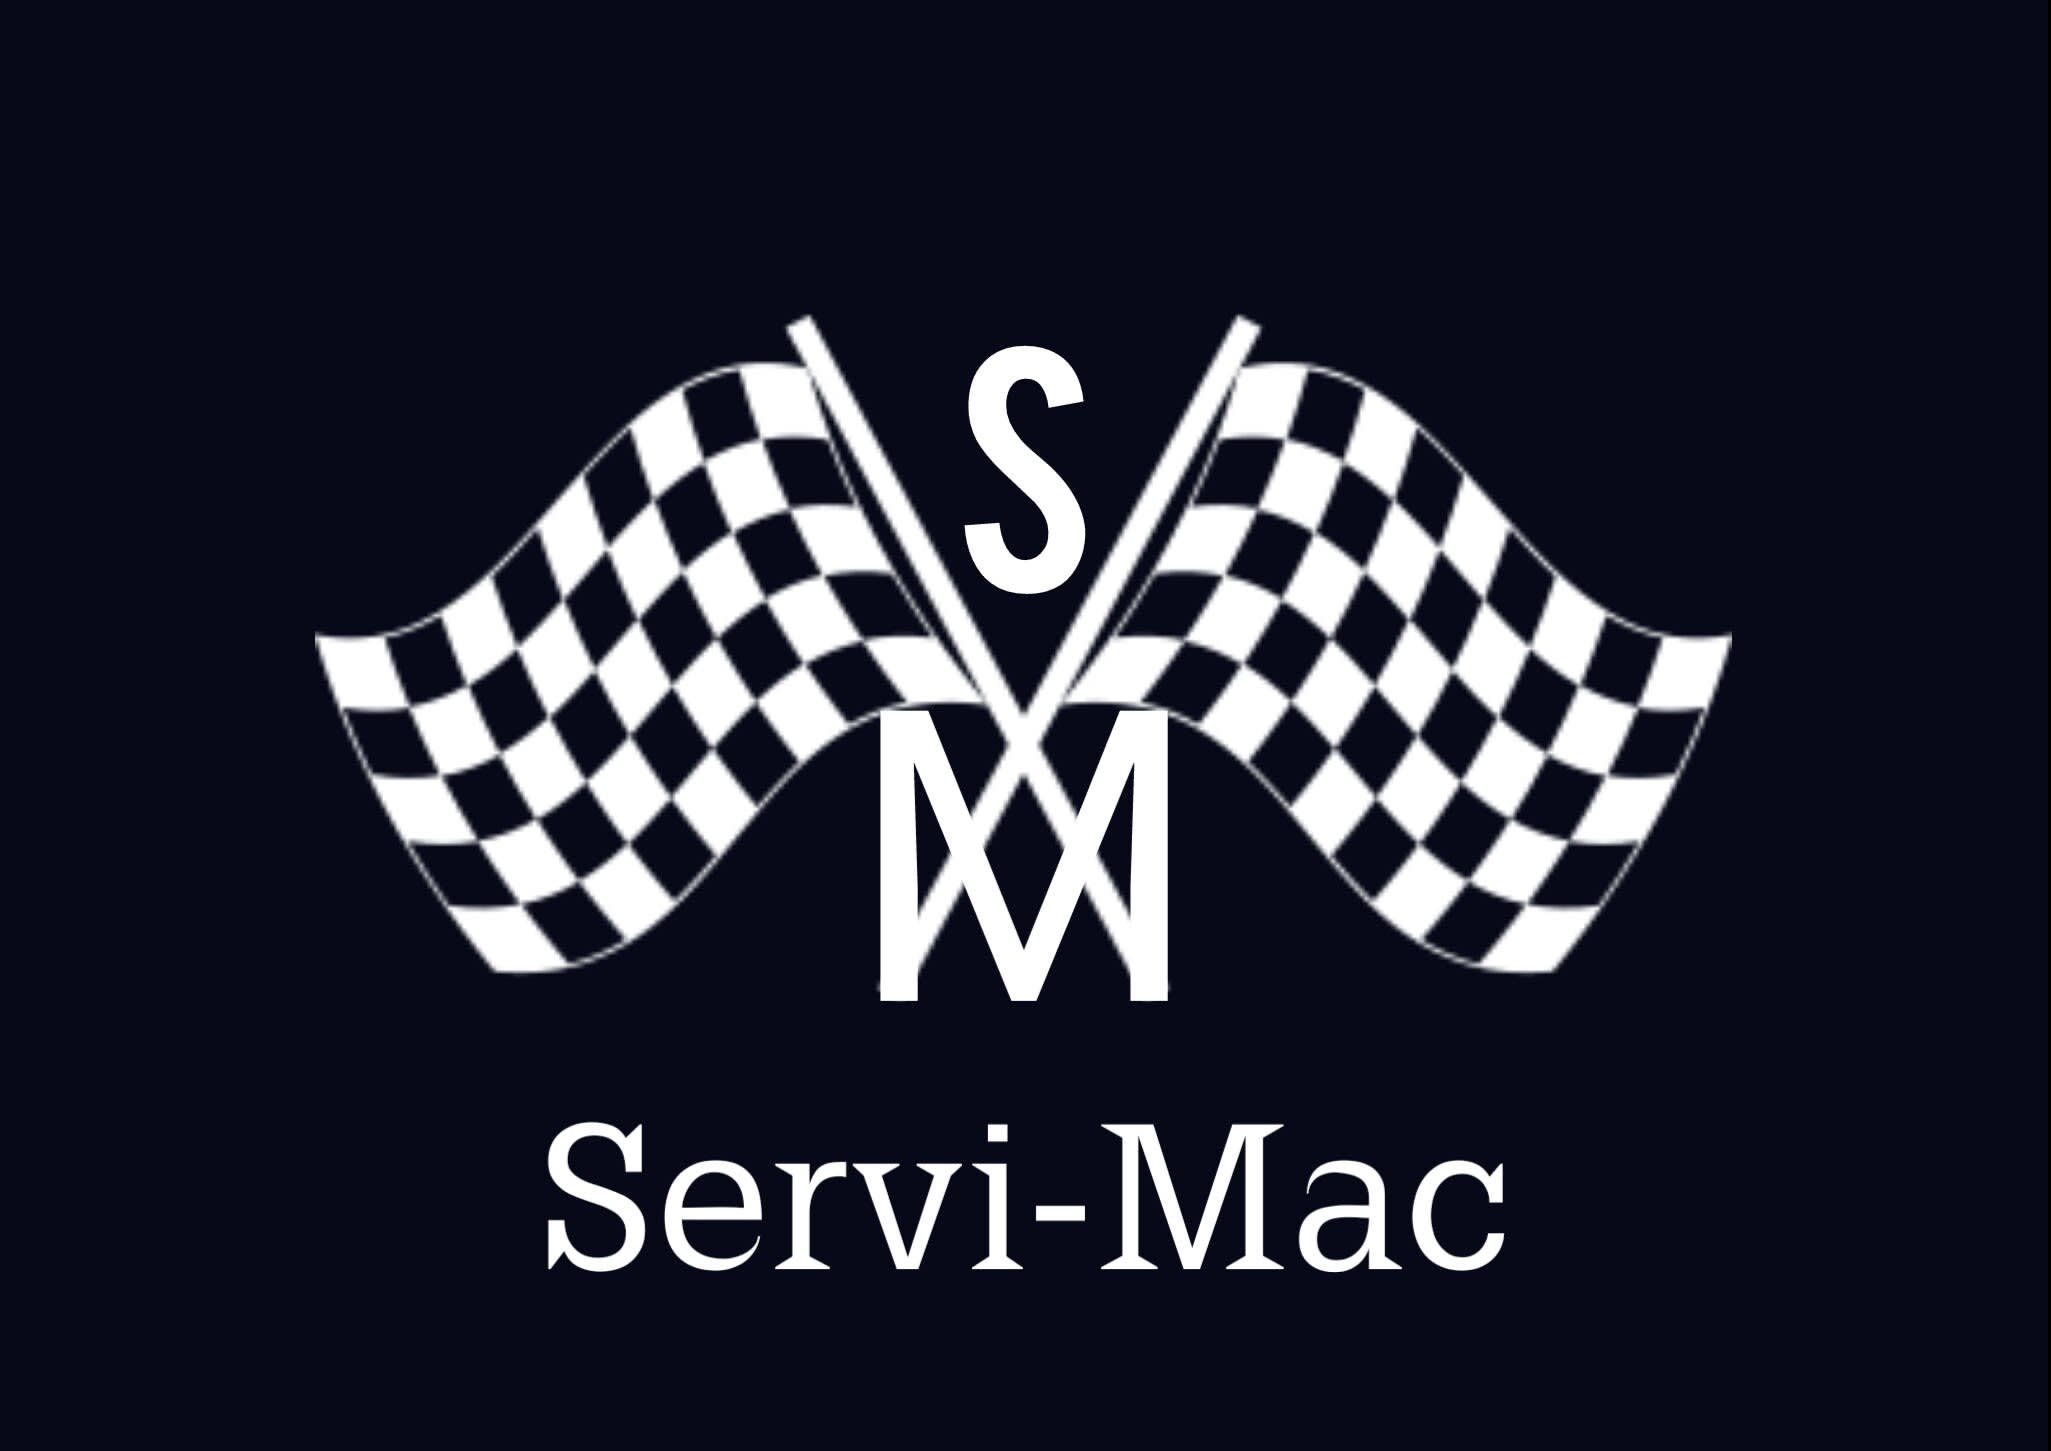 Servicio Mac